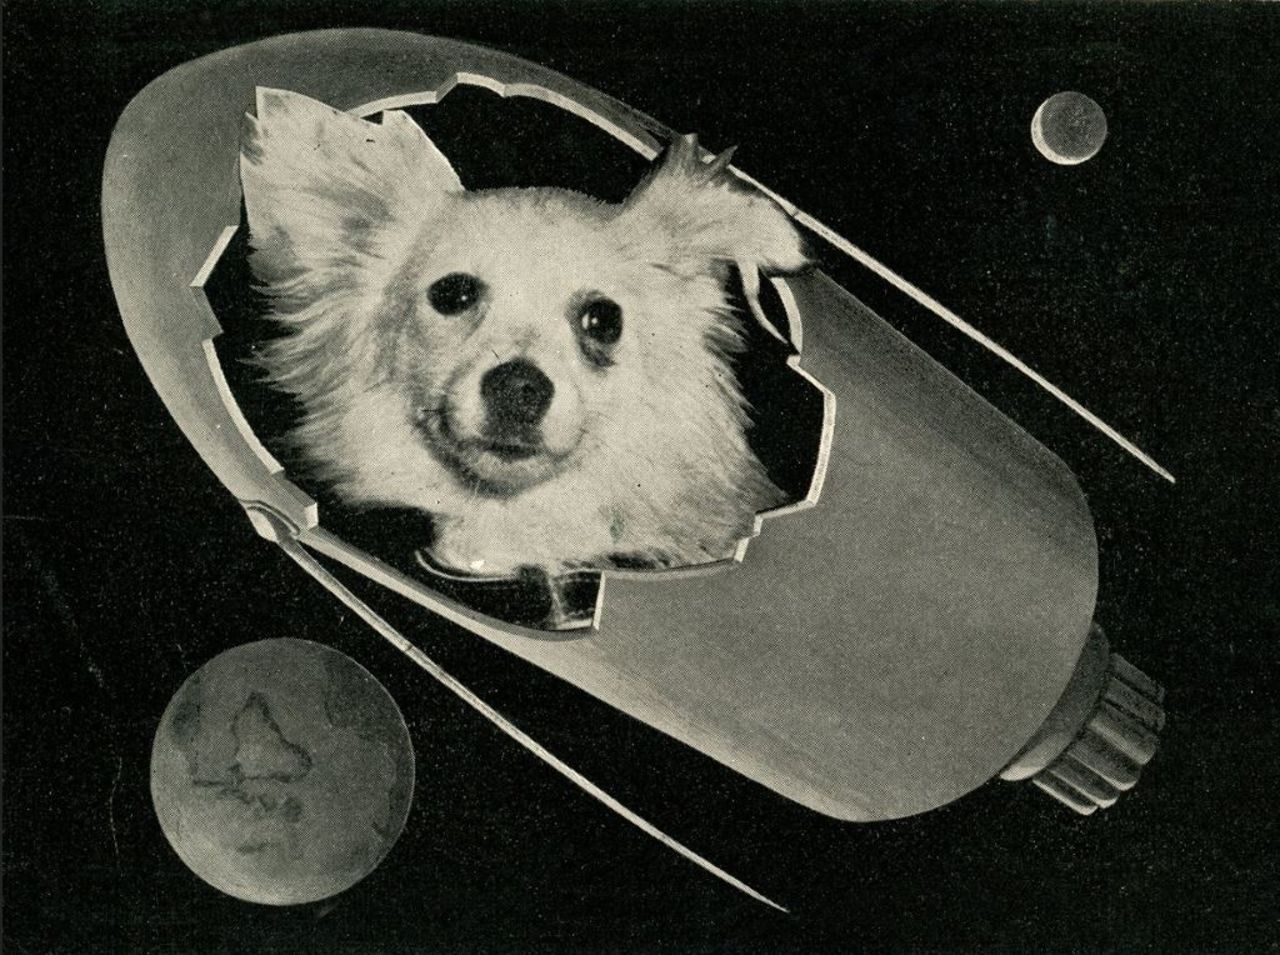 Какой породы были белка и стрелка. Белка и стрелка космонавты. Первый полет в космос собаки белка и стрелка. Собаки космонавты лайка белка и стрелка. Белка собака космонавт.